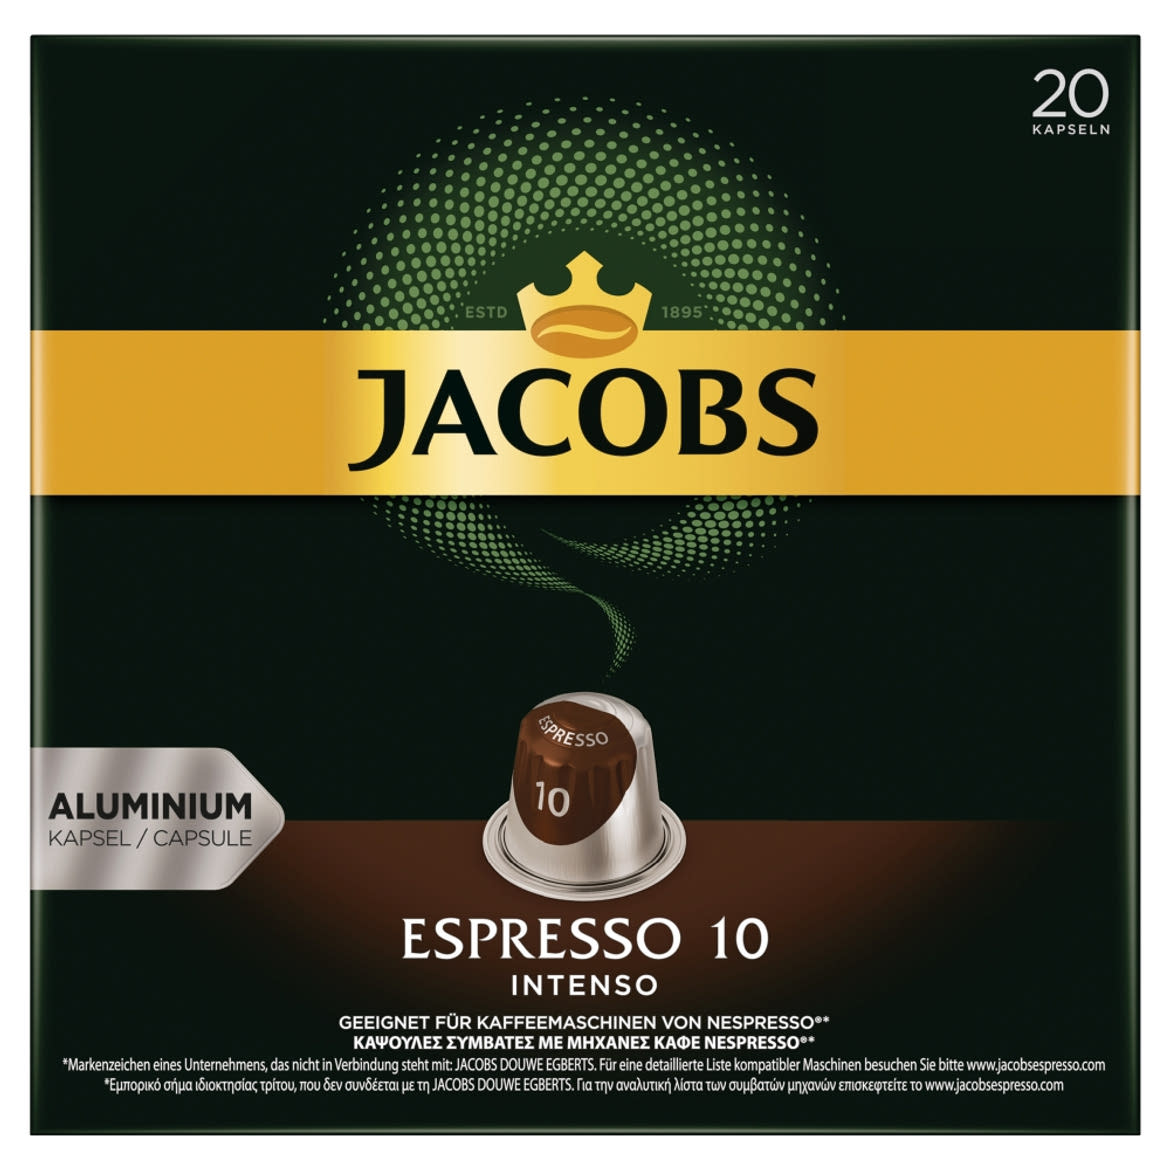 Jacobs Espresso 10 Intenso őrölt-pörkölt kávé kapszulában